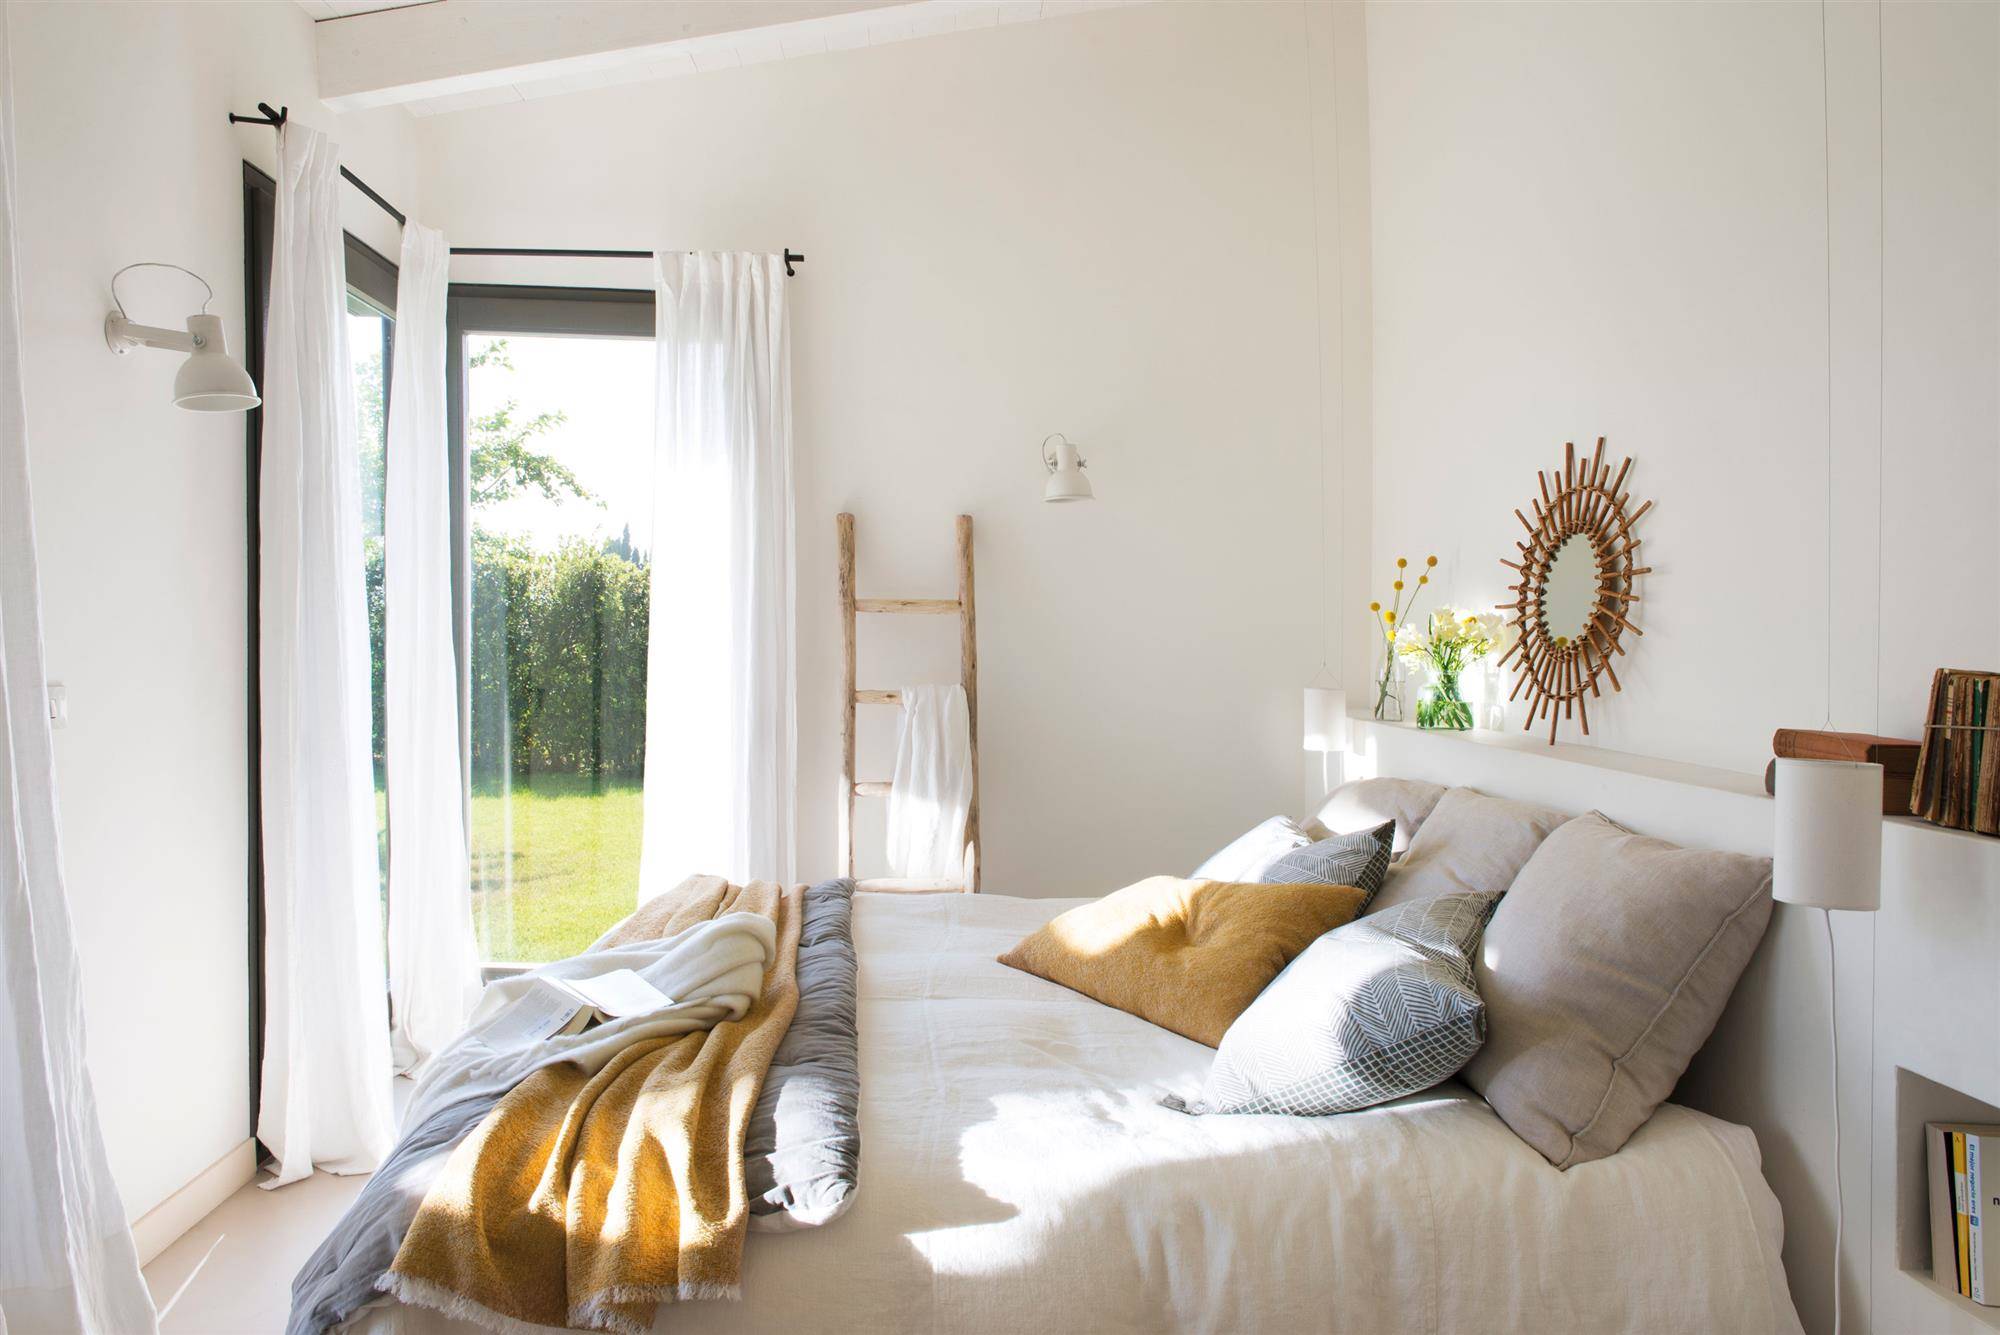 Dormitorio decorado en blanco con pinceladas de color.